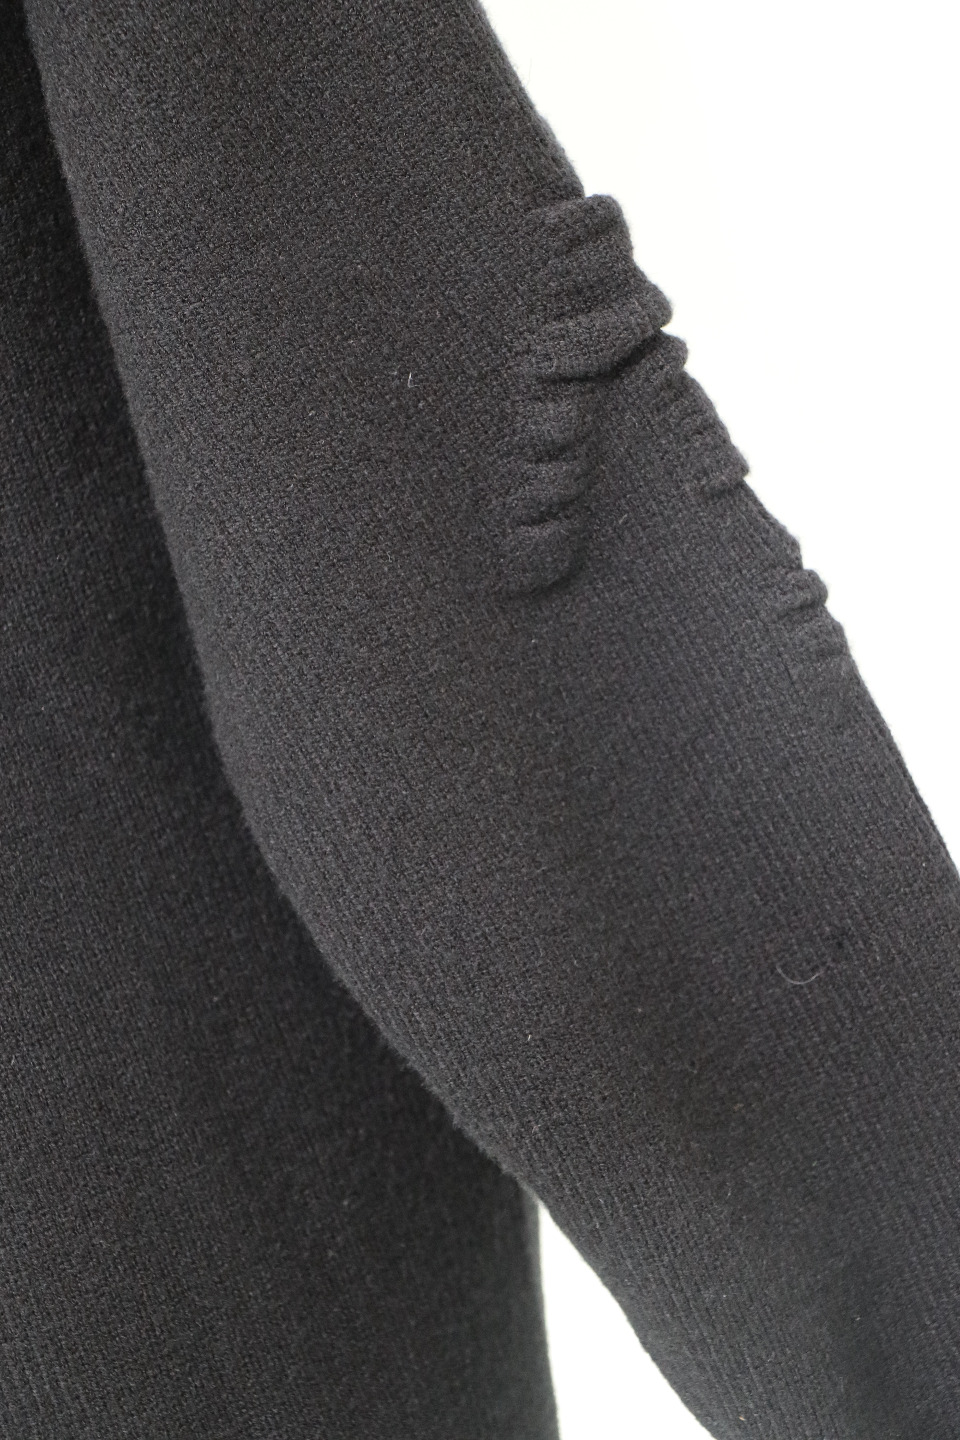 肌寒い季節に欠かせない ジバンシィ ニット偽物 柔らかい 暖かい トップス セーター メンズ シンプル 2色可選_3